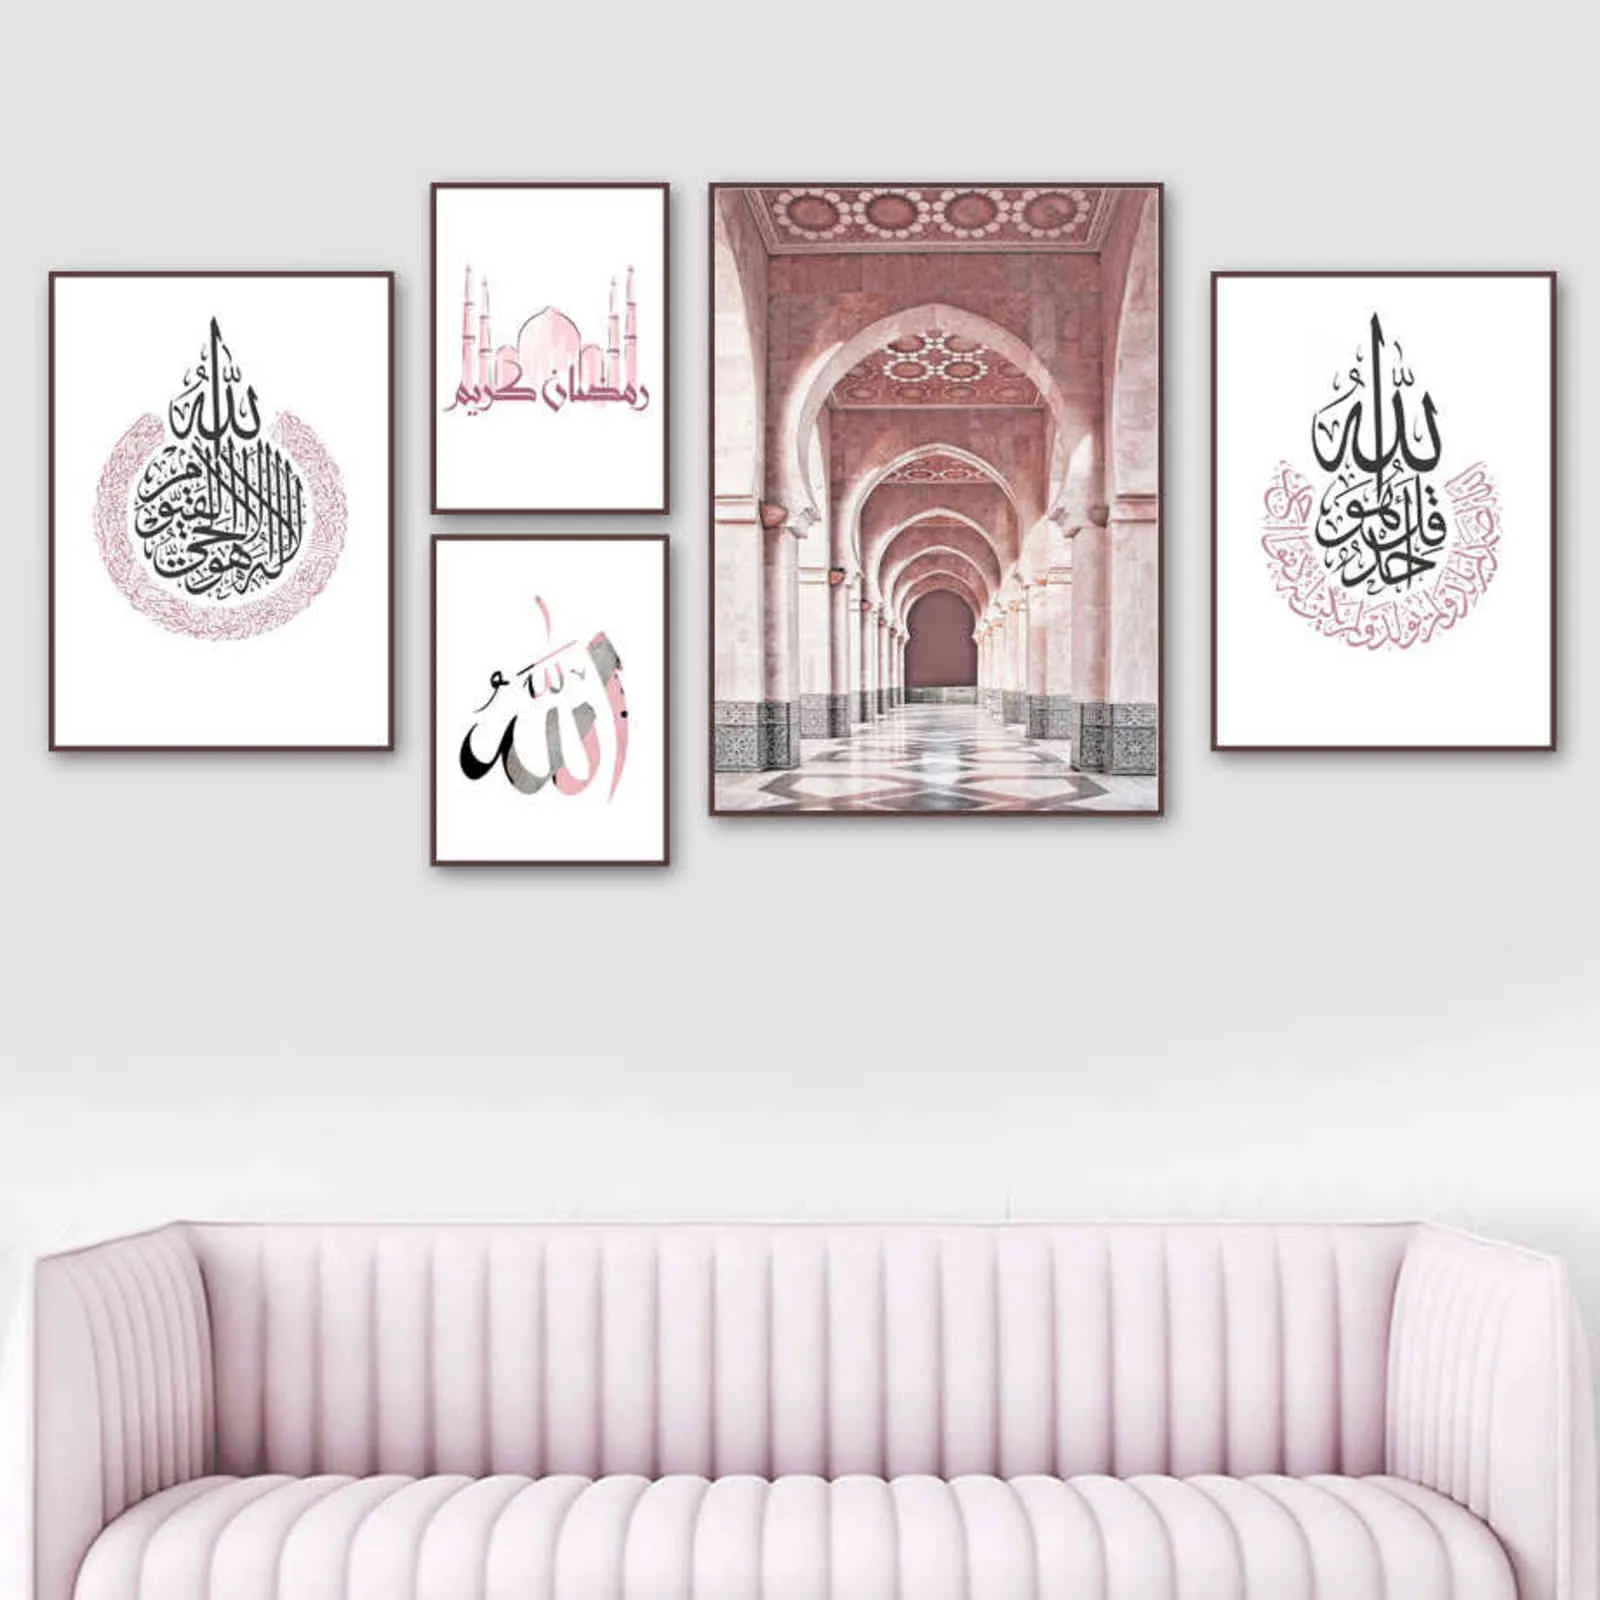 المسجد المغربي الخط العربي الإسلامي المشارك جدار الفن طباعة قماش اللوحة الشمال جدار صور لغرفة المعيشة الديكور H1110